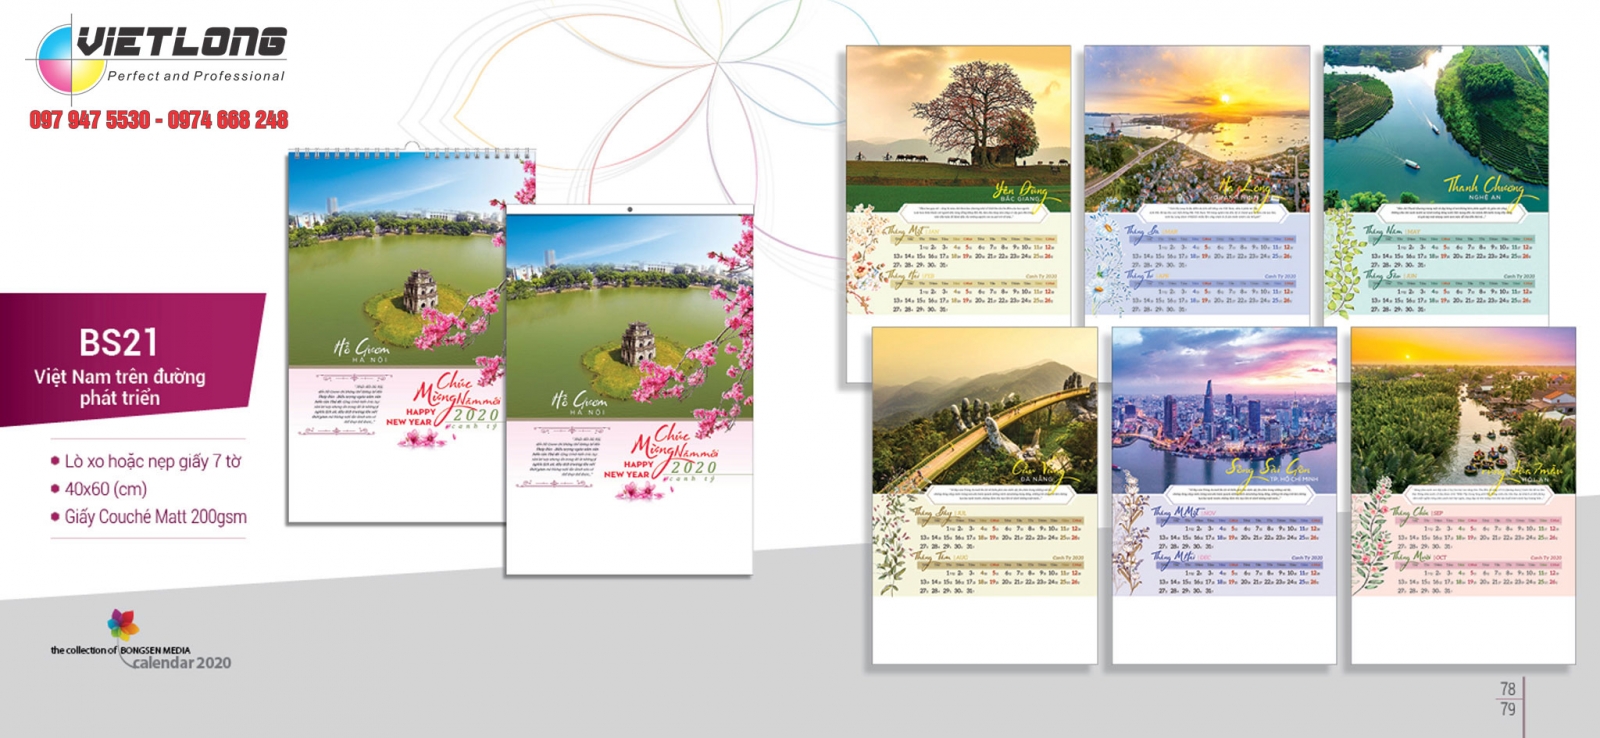 Tổng hợp 1 số mẫu lịch 2020 đẹp và ấn tượng chủ đề Thắng Cảnh Hà Nội